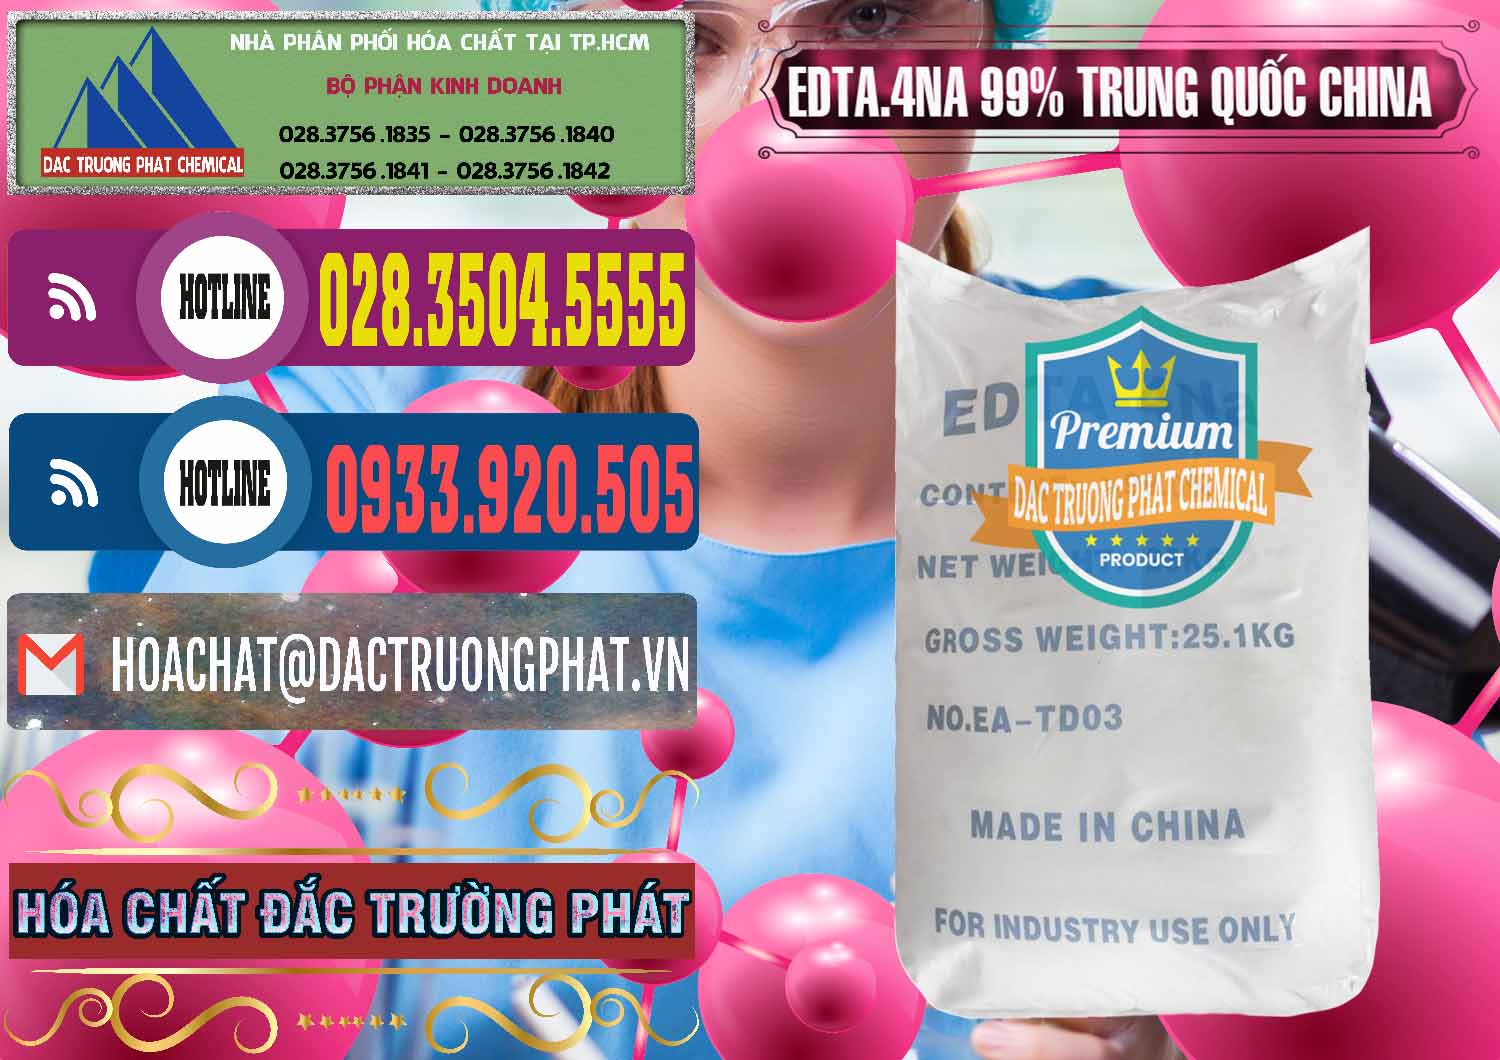 Công ty chuyên cung ứng & bán EDTA.4NA - EDTA Muối 99% Trung Quốc China - 0292 - Cty chuyên cung cấp và kinh doanh hóa chất tại TP.HCM - muabanhoachat.com.vn